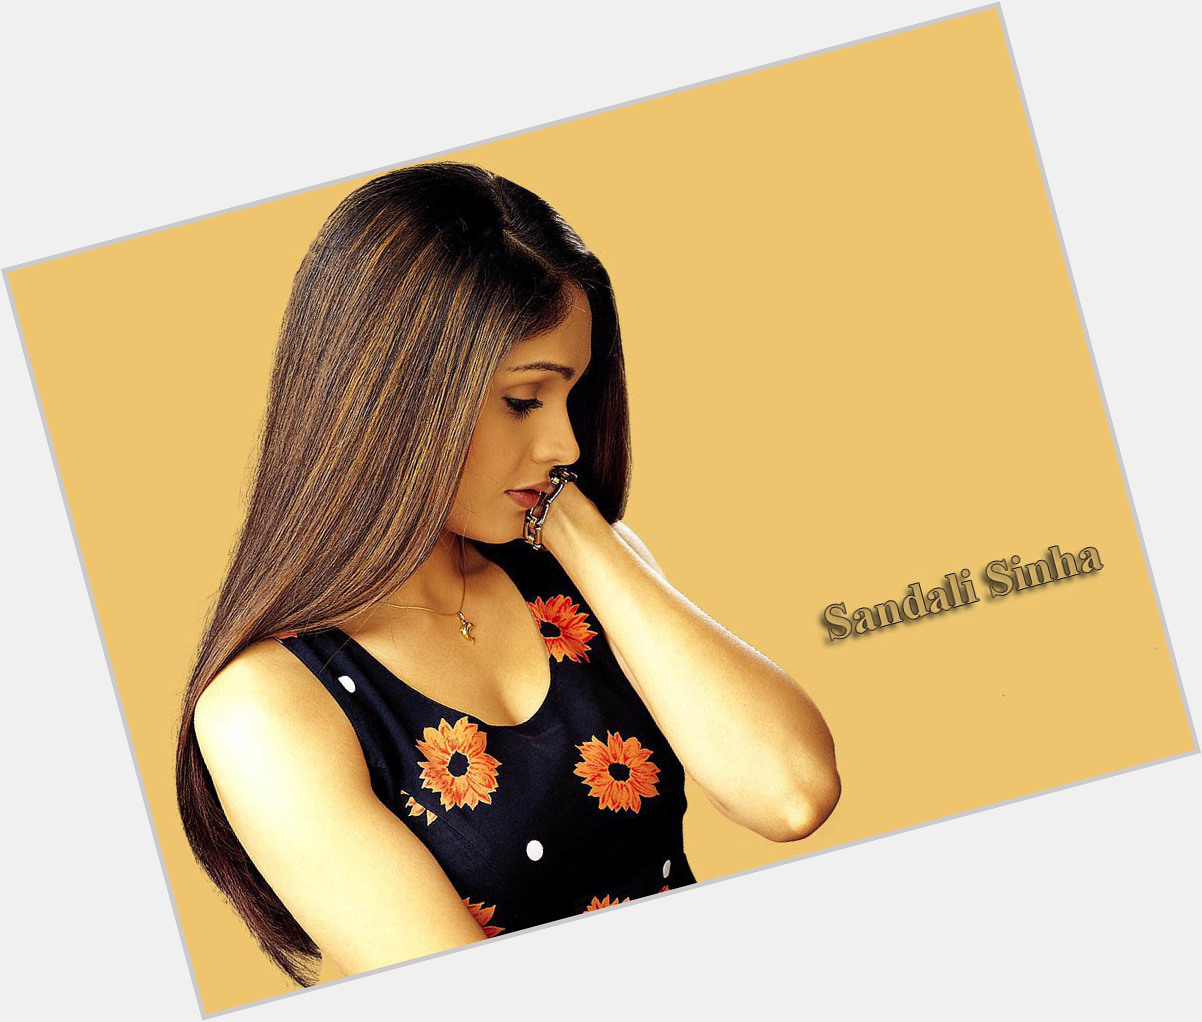 Sandali Sinha  light brown hair & hairstyles